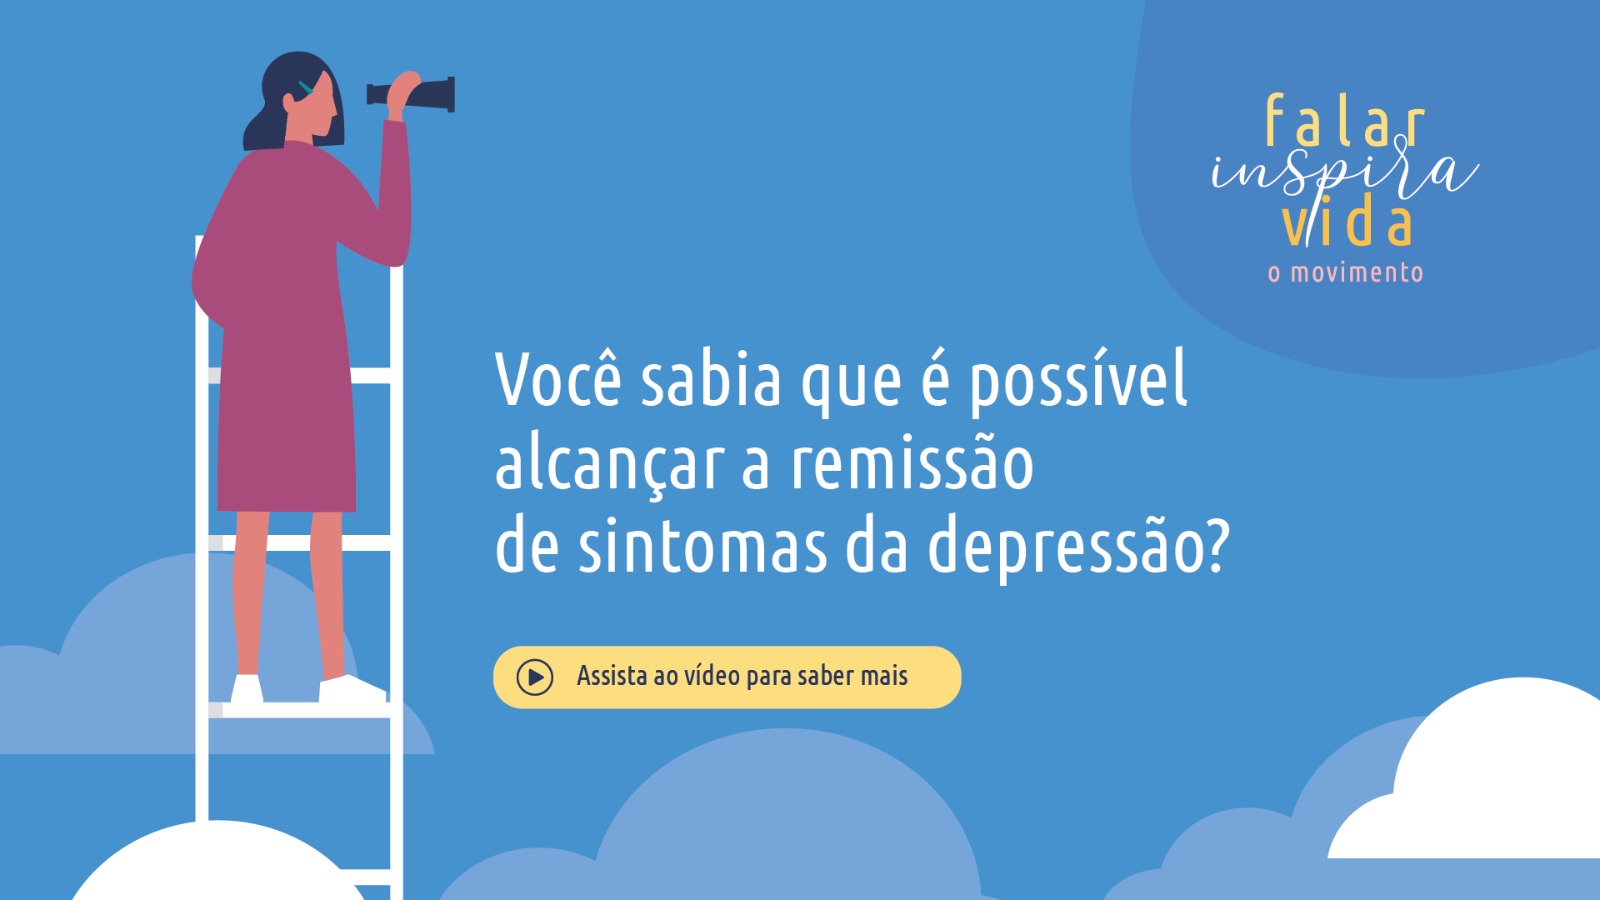 Psiquiatria Goiânia - O movimento falar inspira vida Você sabia que é possível alcançar a remissão de sintomas da depressão